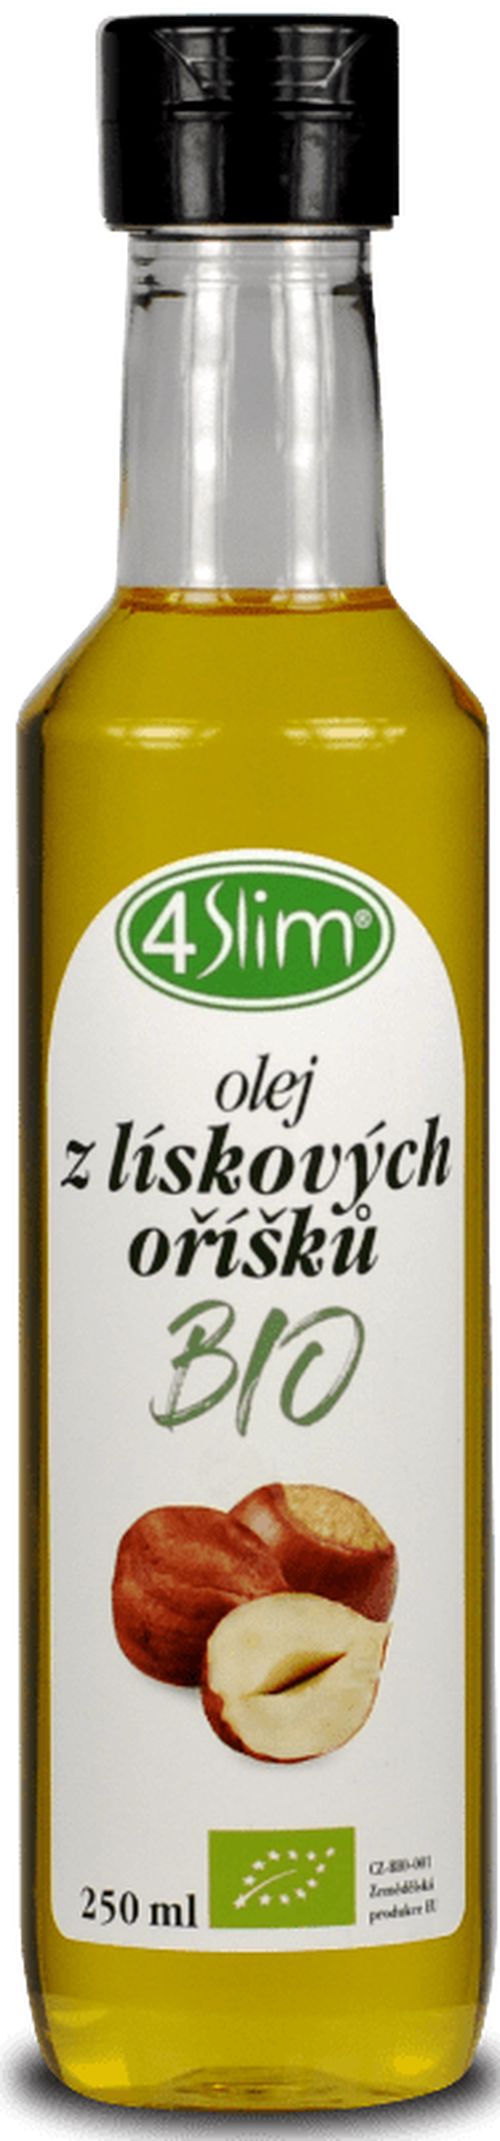 4Slim - Olej z lieskových orechov BIO, 250 ml *CZ-BIO-001